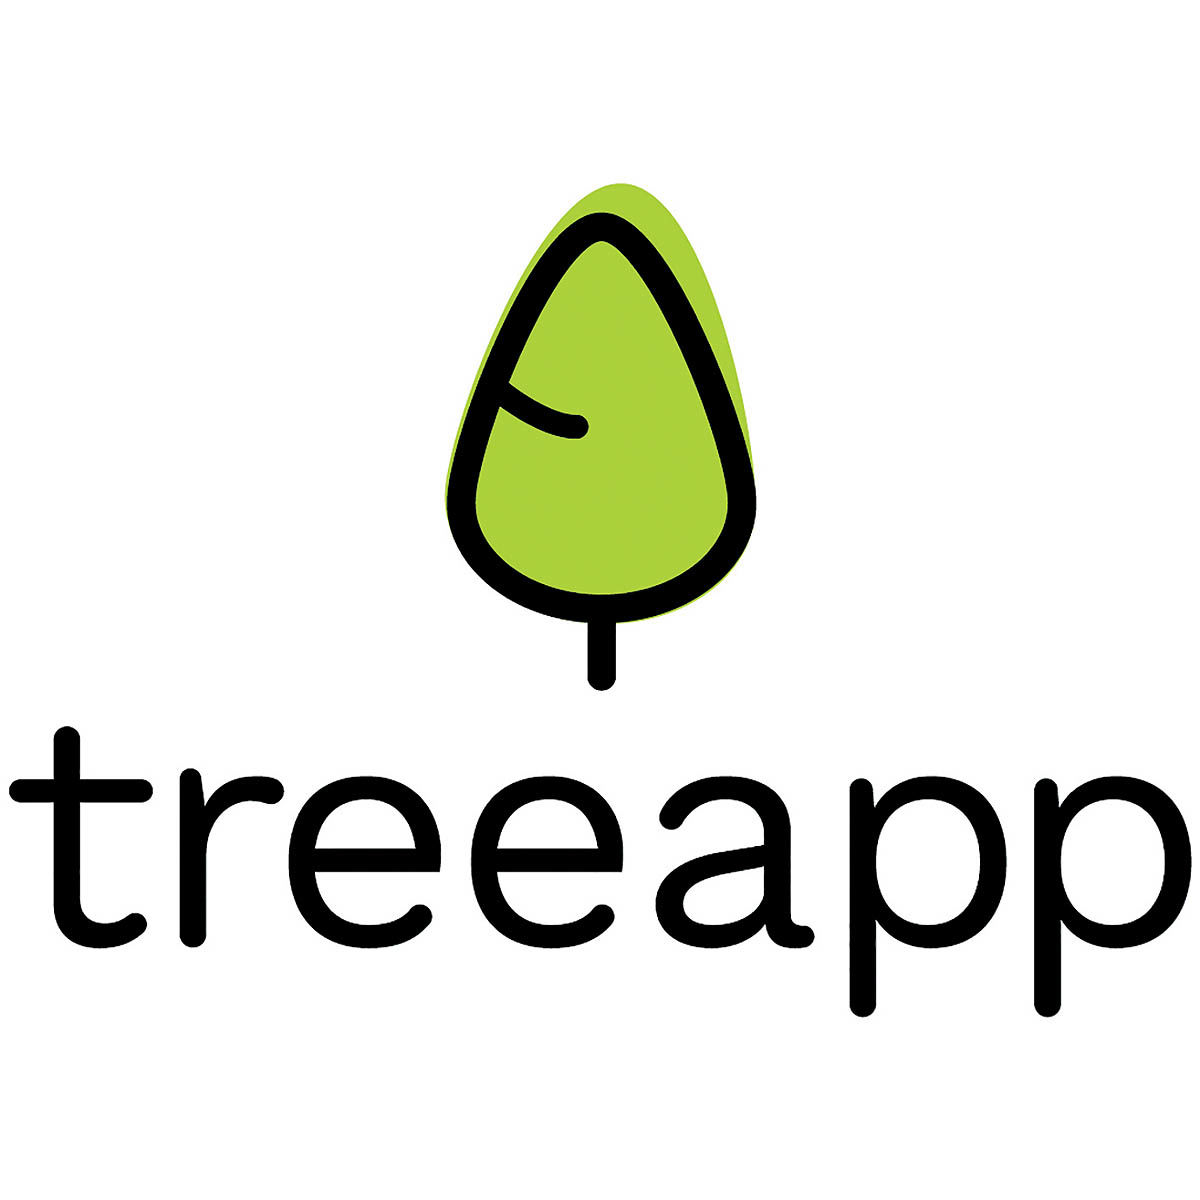 به کمک این اپلیکیشن هر روز یک درخت بکار!